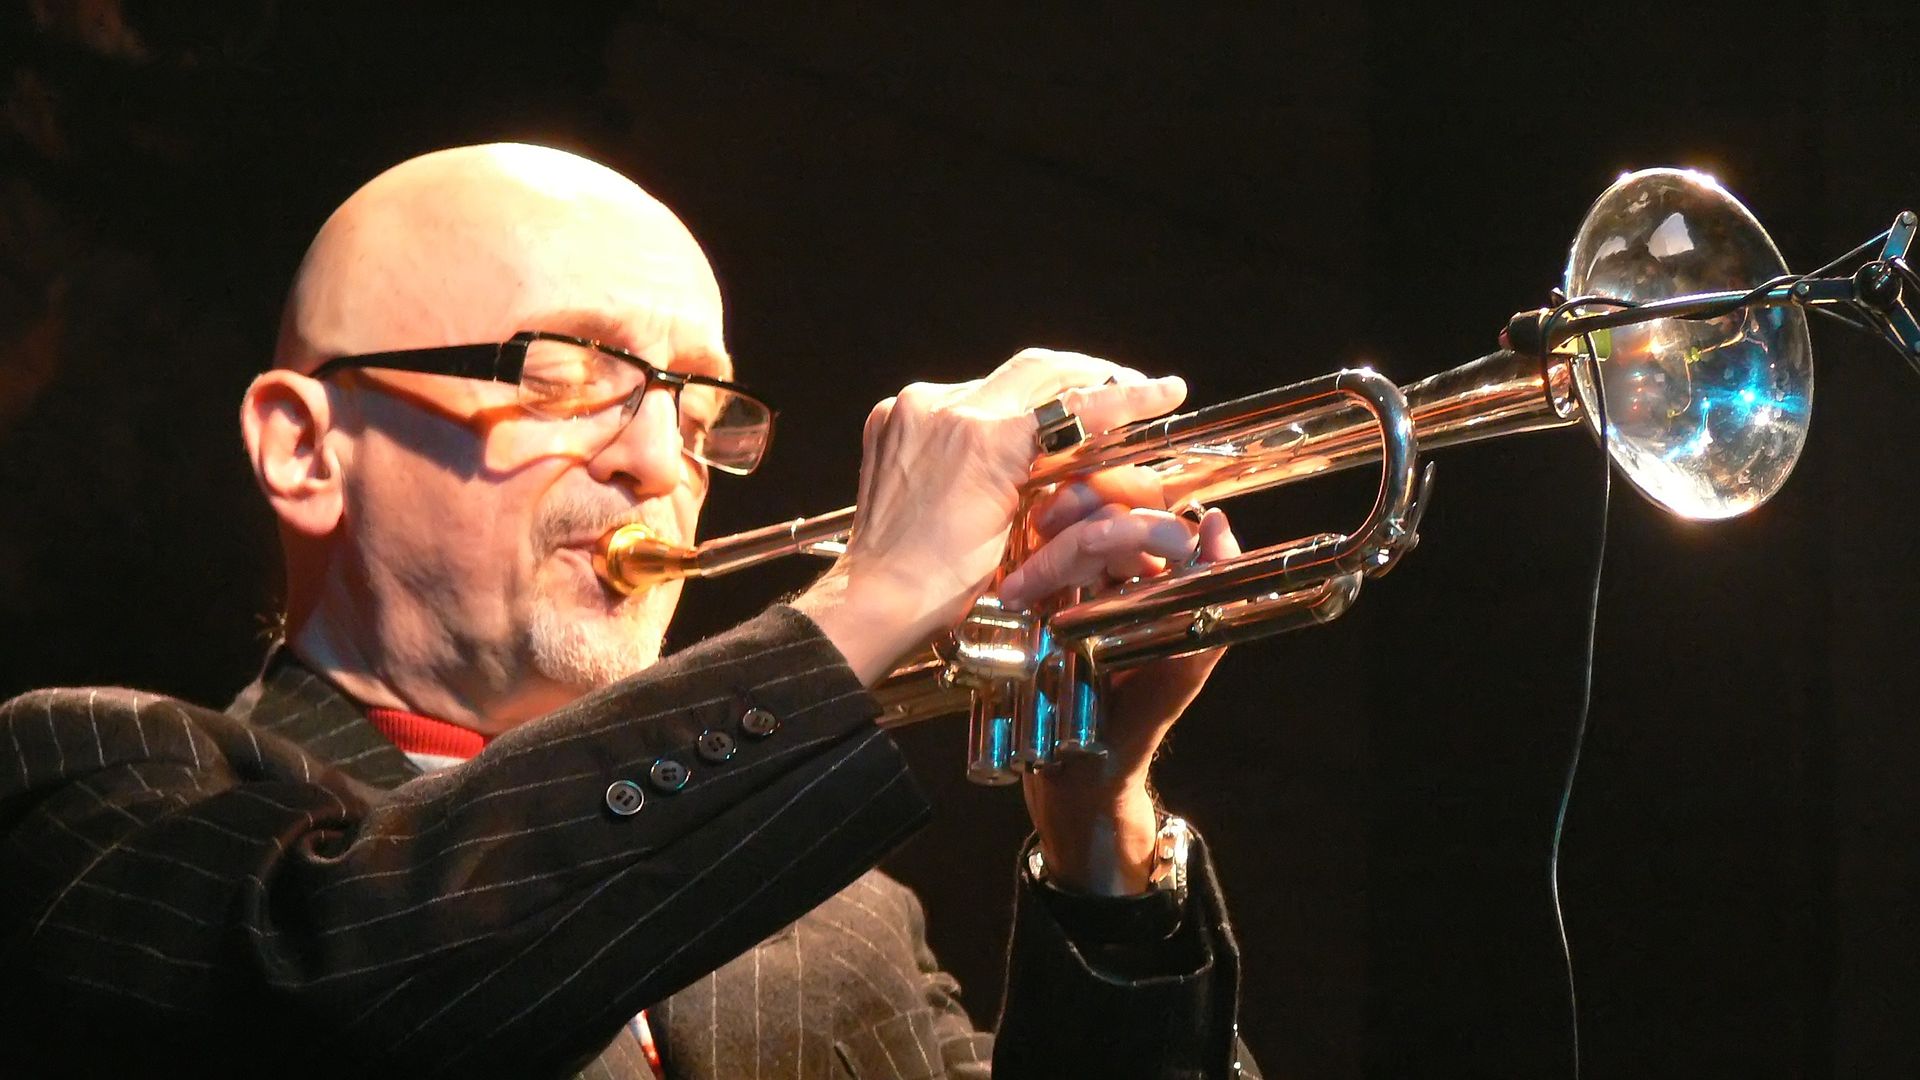 Meghalt Tomasz Stanko, az európai jazz egyik legismertebb trombitása